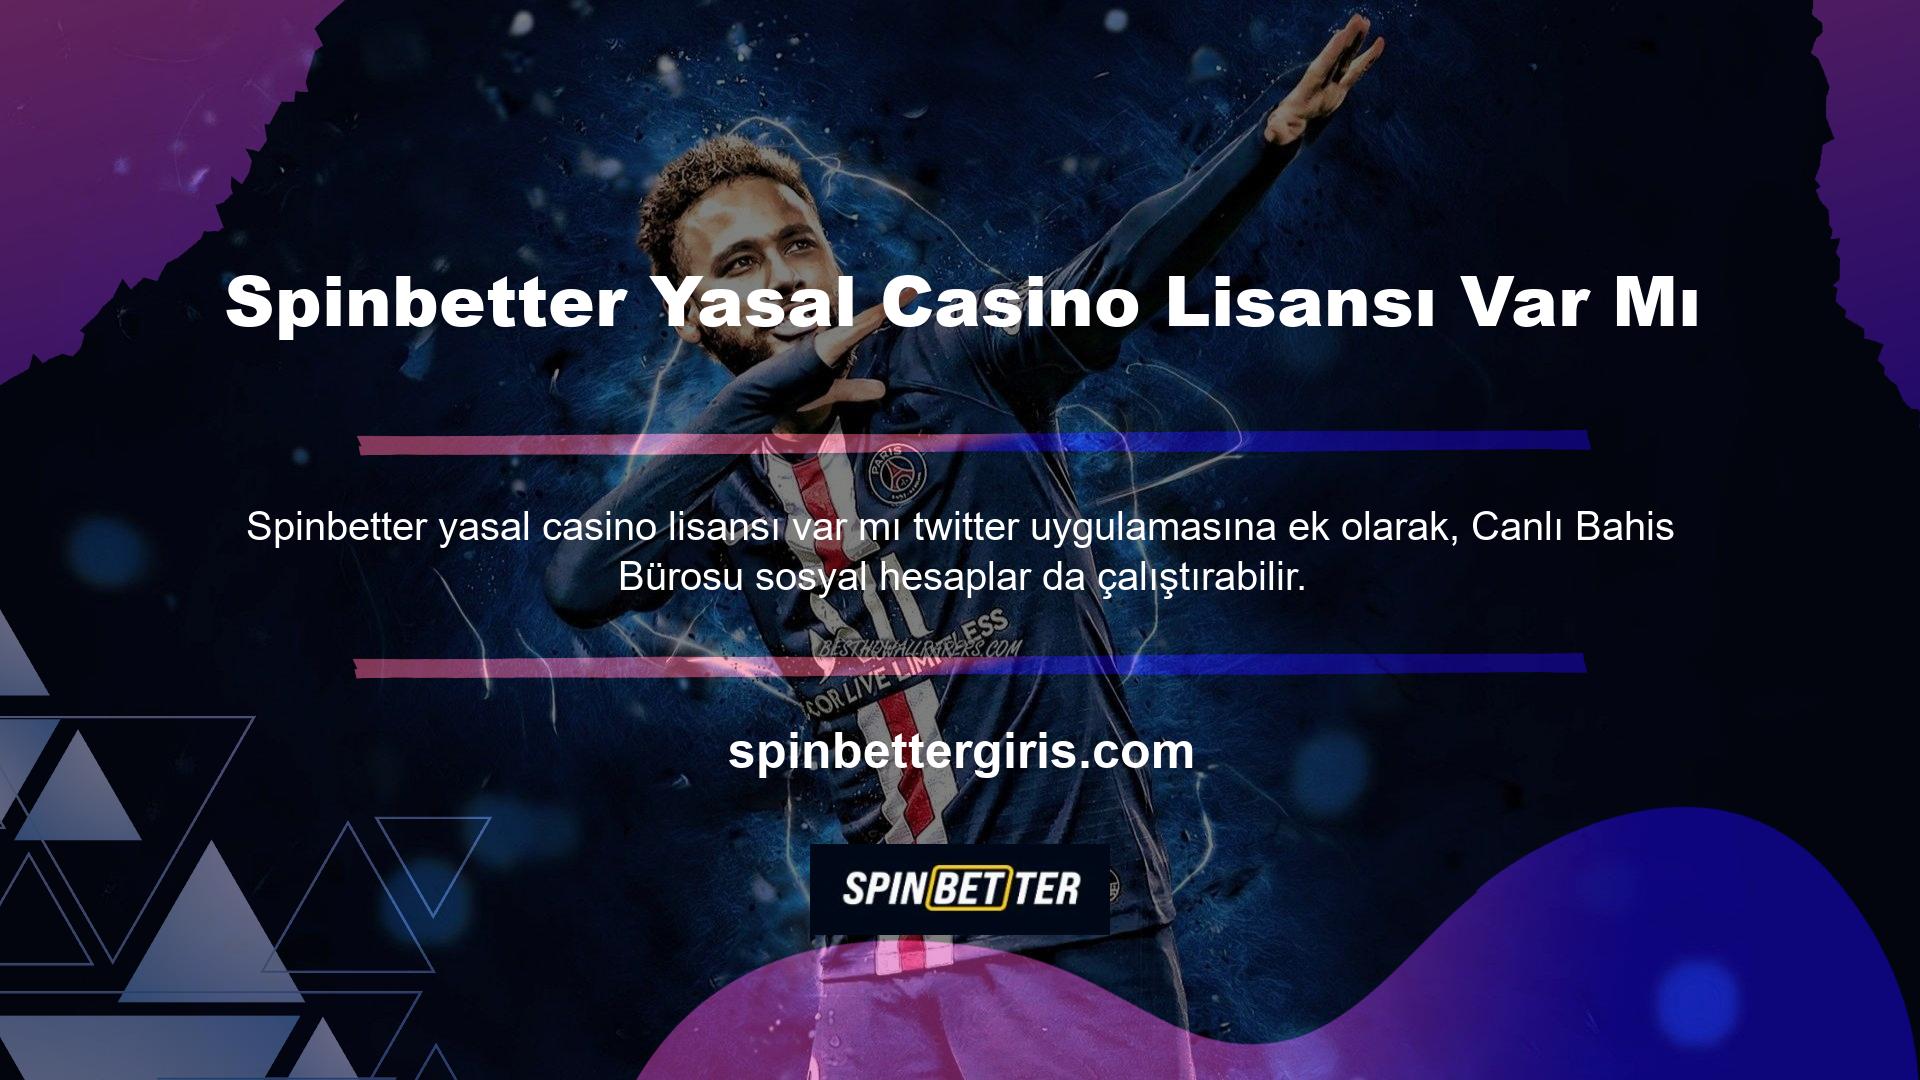 Bu canlı bahis sitesi, ülkemiz casino pazarındaki en güçlü ve kaliteli sağlayıcılardan biri haline geldi